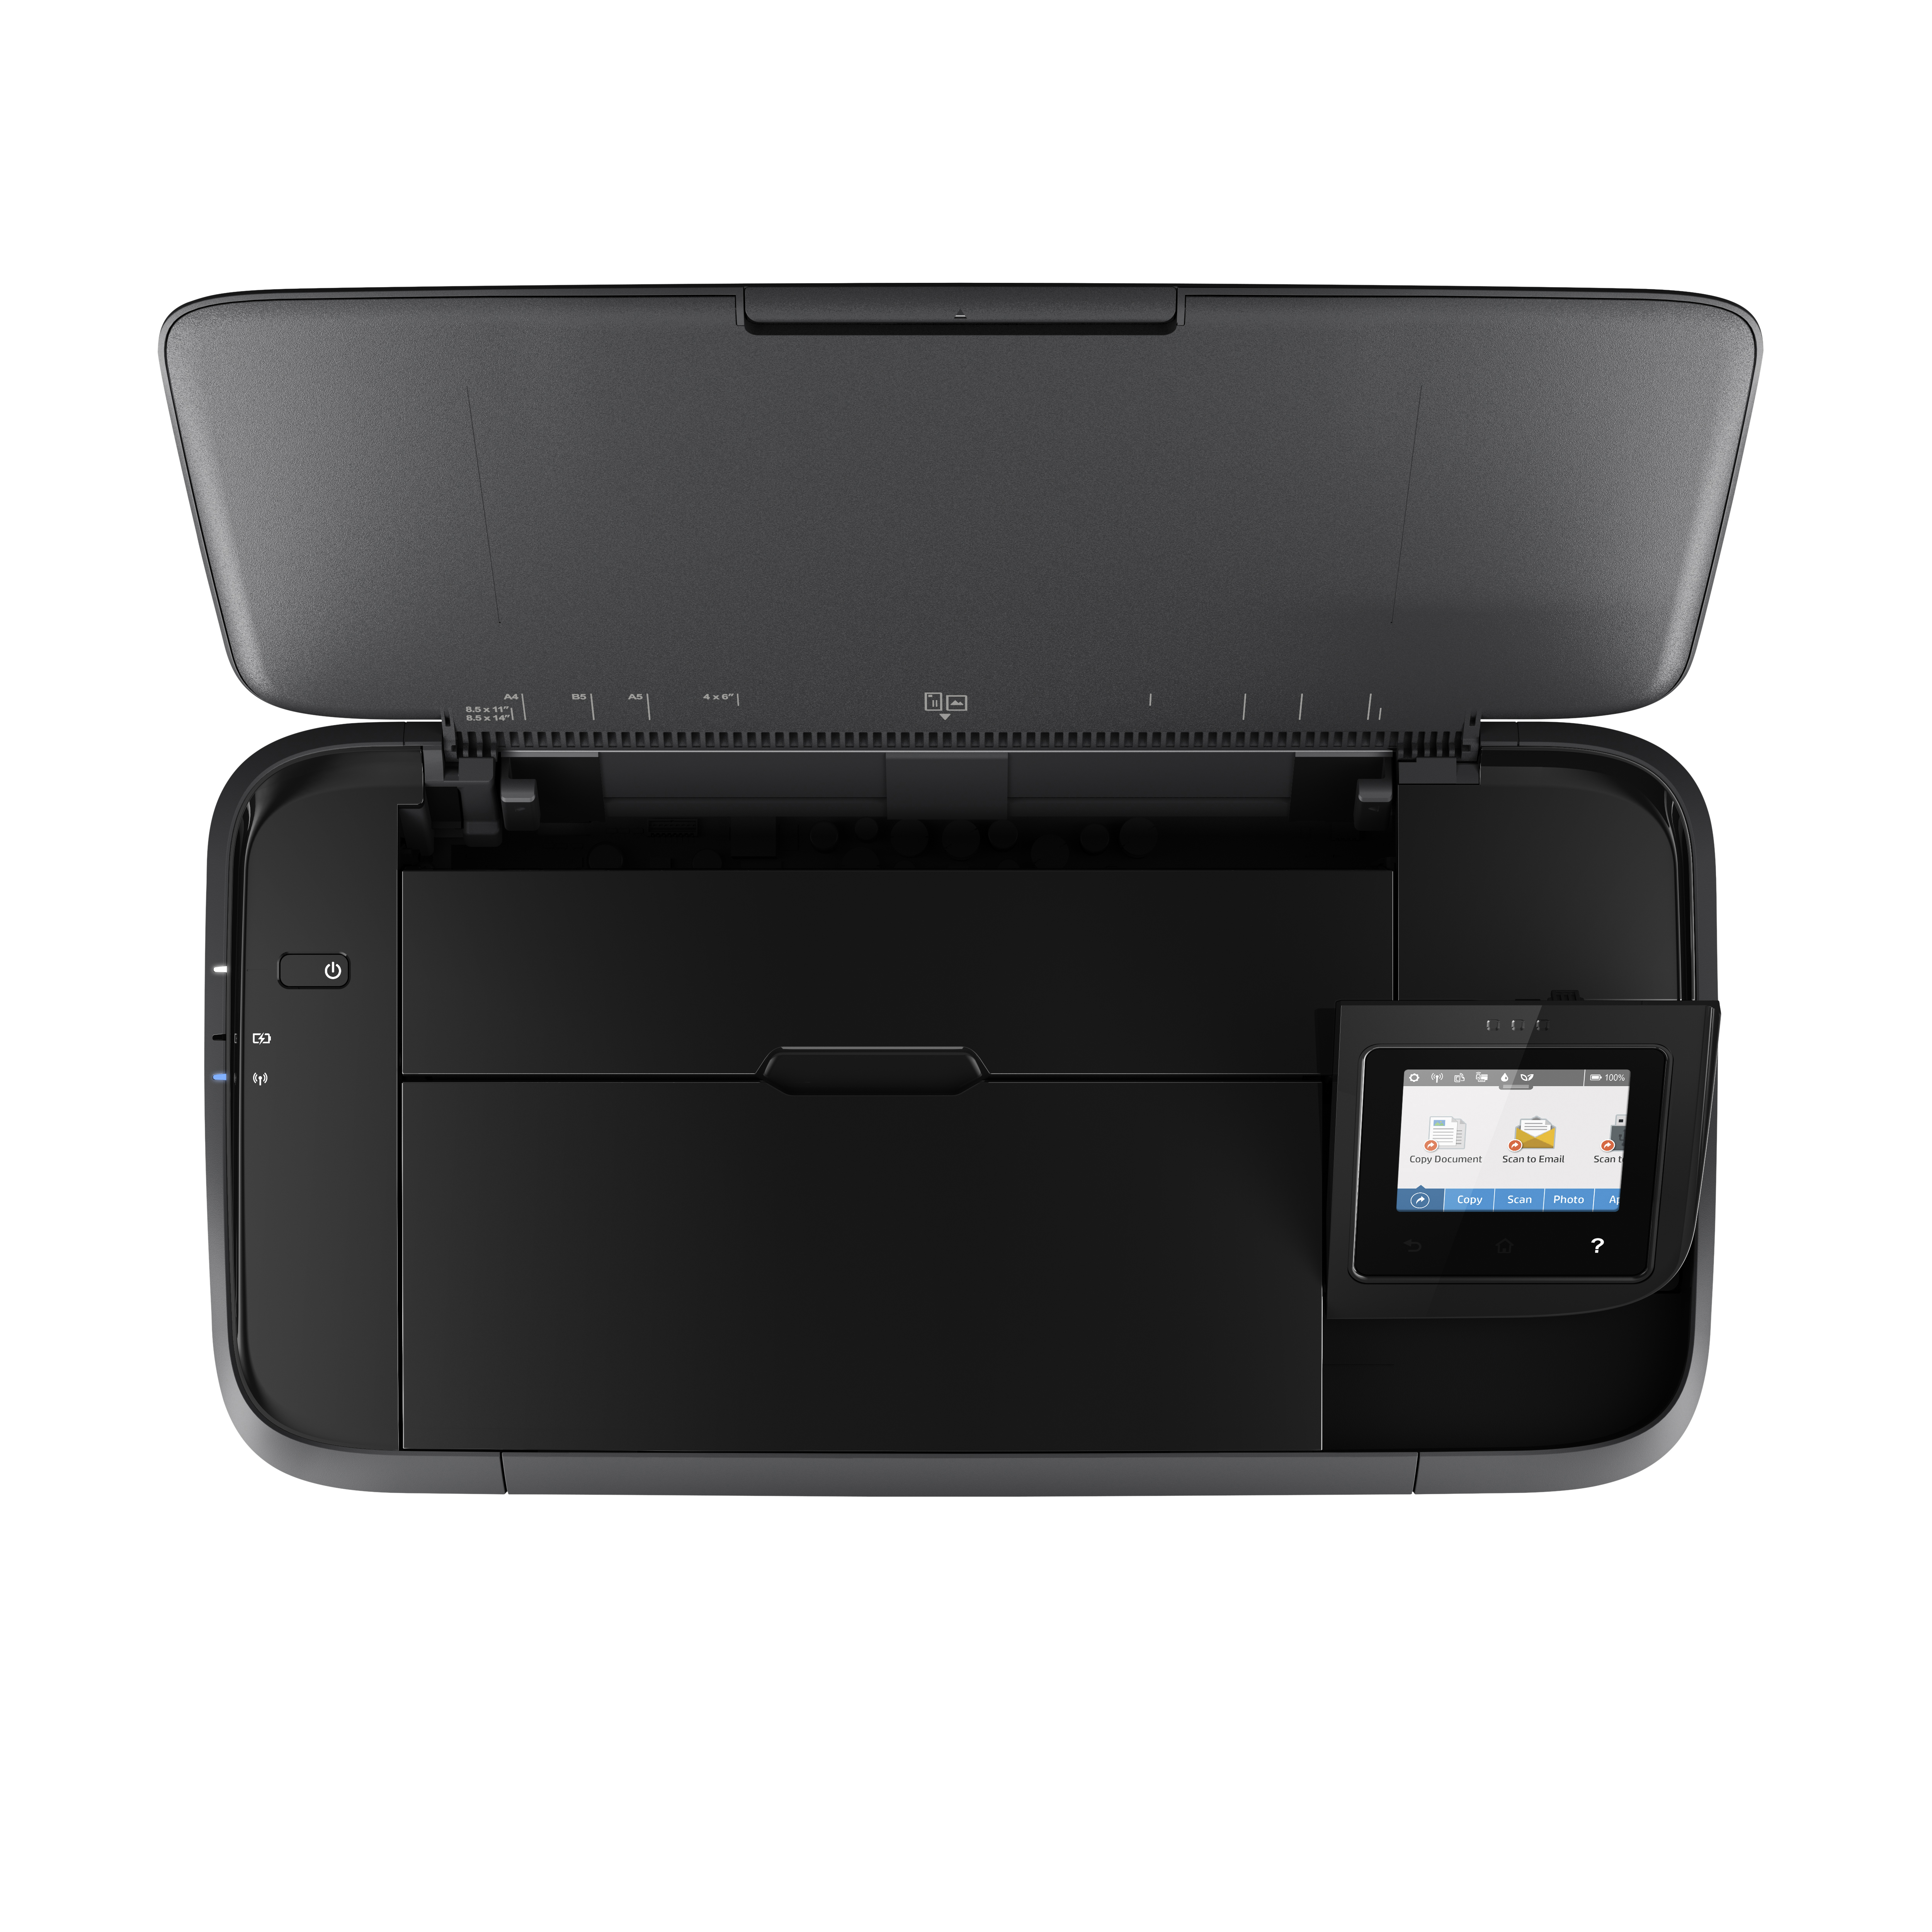 HP OfficeJet 250 Mobil Tintenstrahldruck 3-in-1 Multifunktionsdrucker WLAN